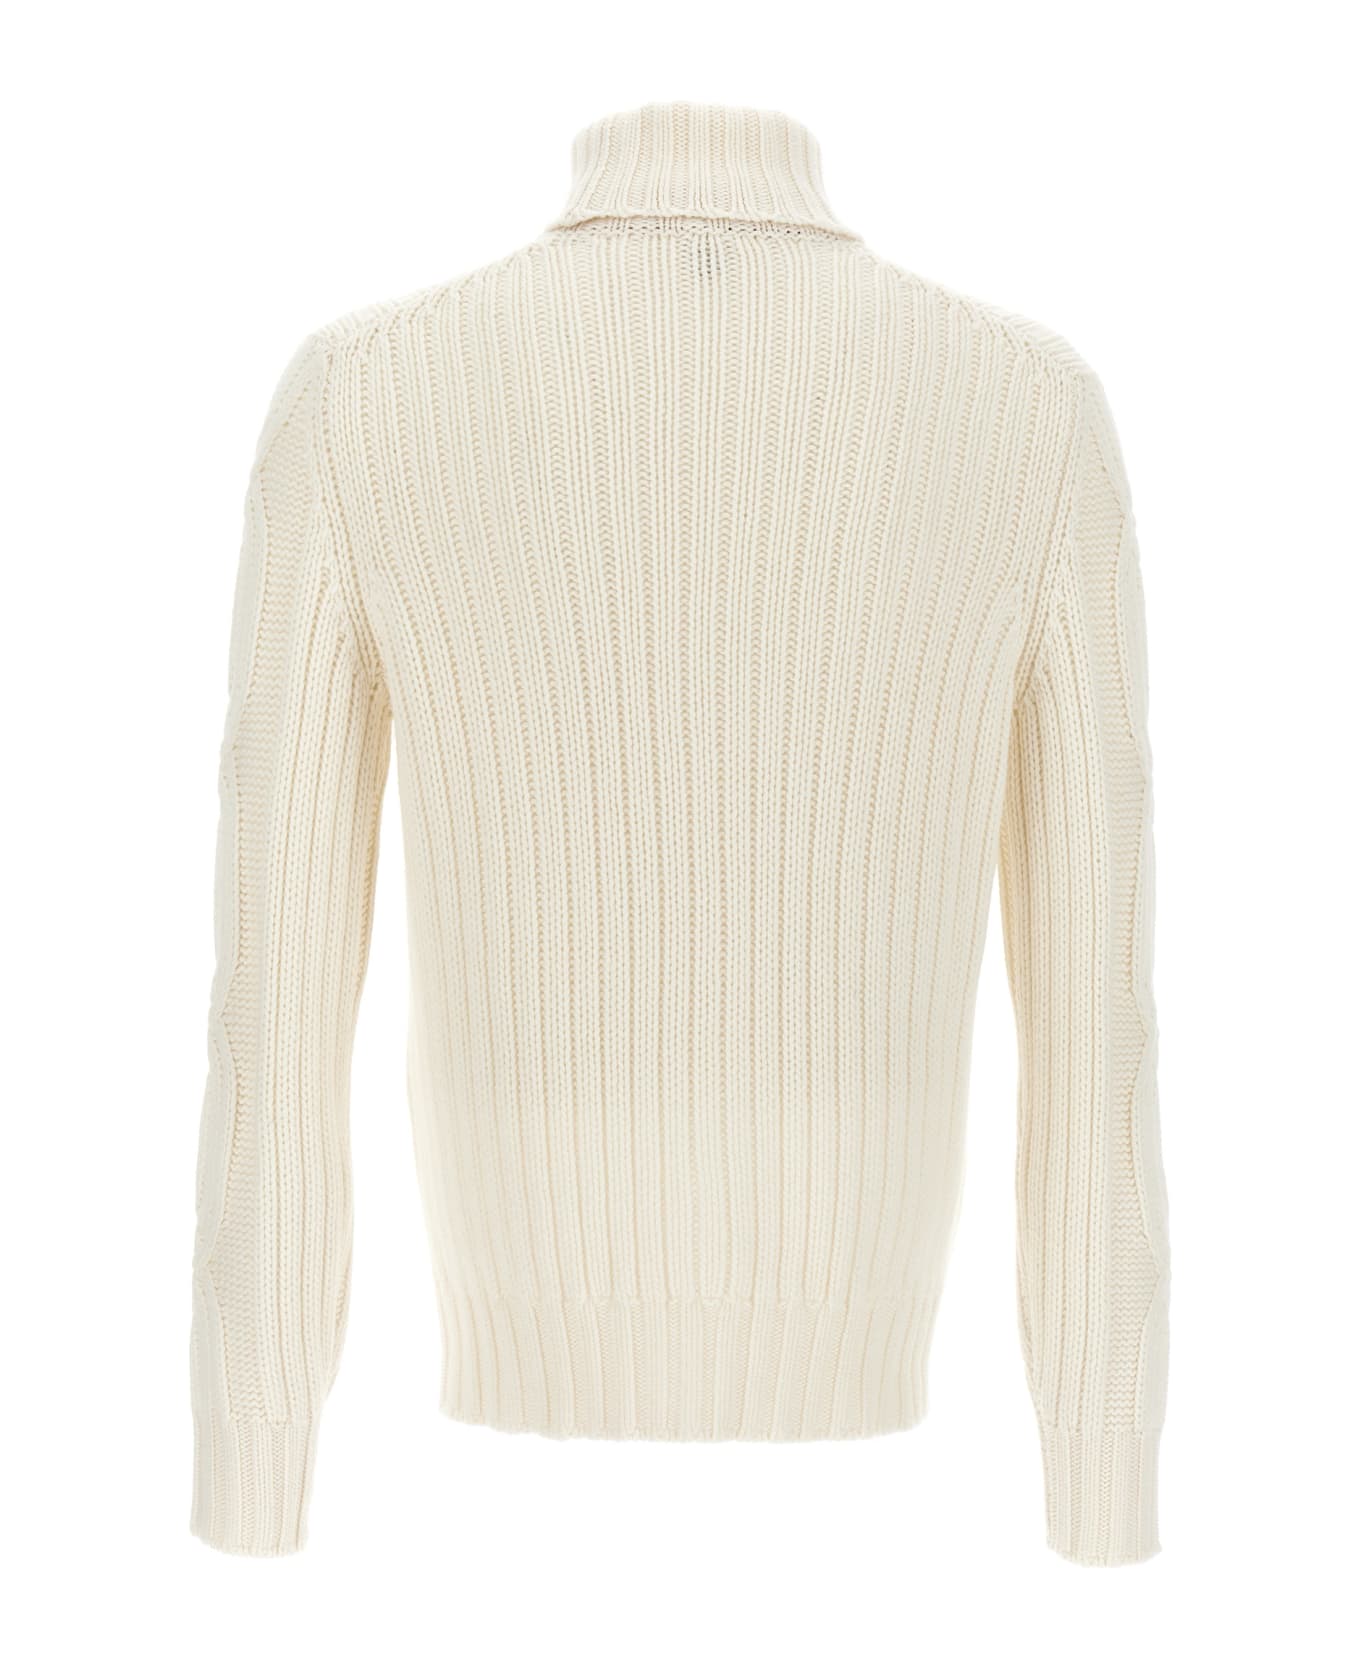 Brunello Cucinelli Braided Cashmere Turtleneck Sweater - Cream ニットウェア